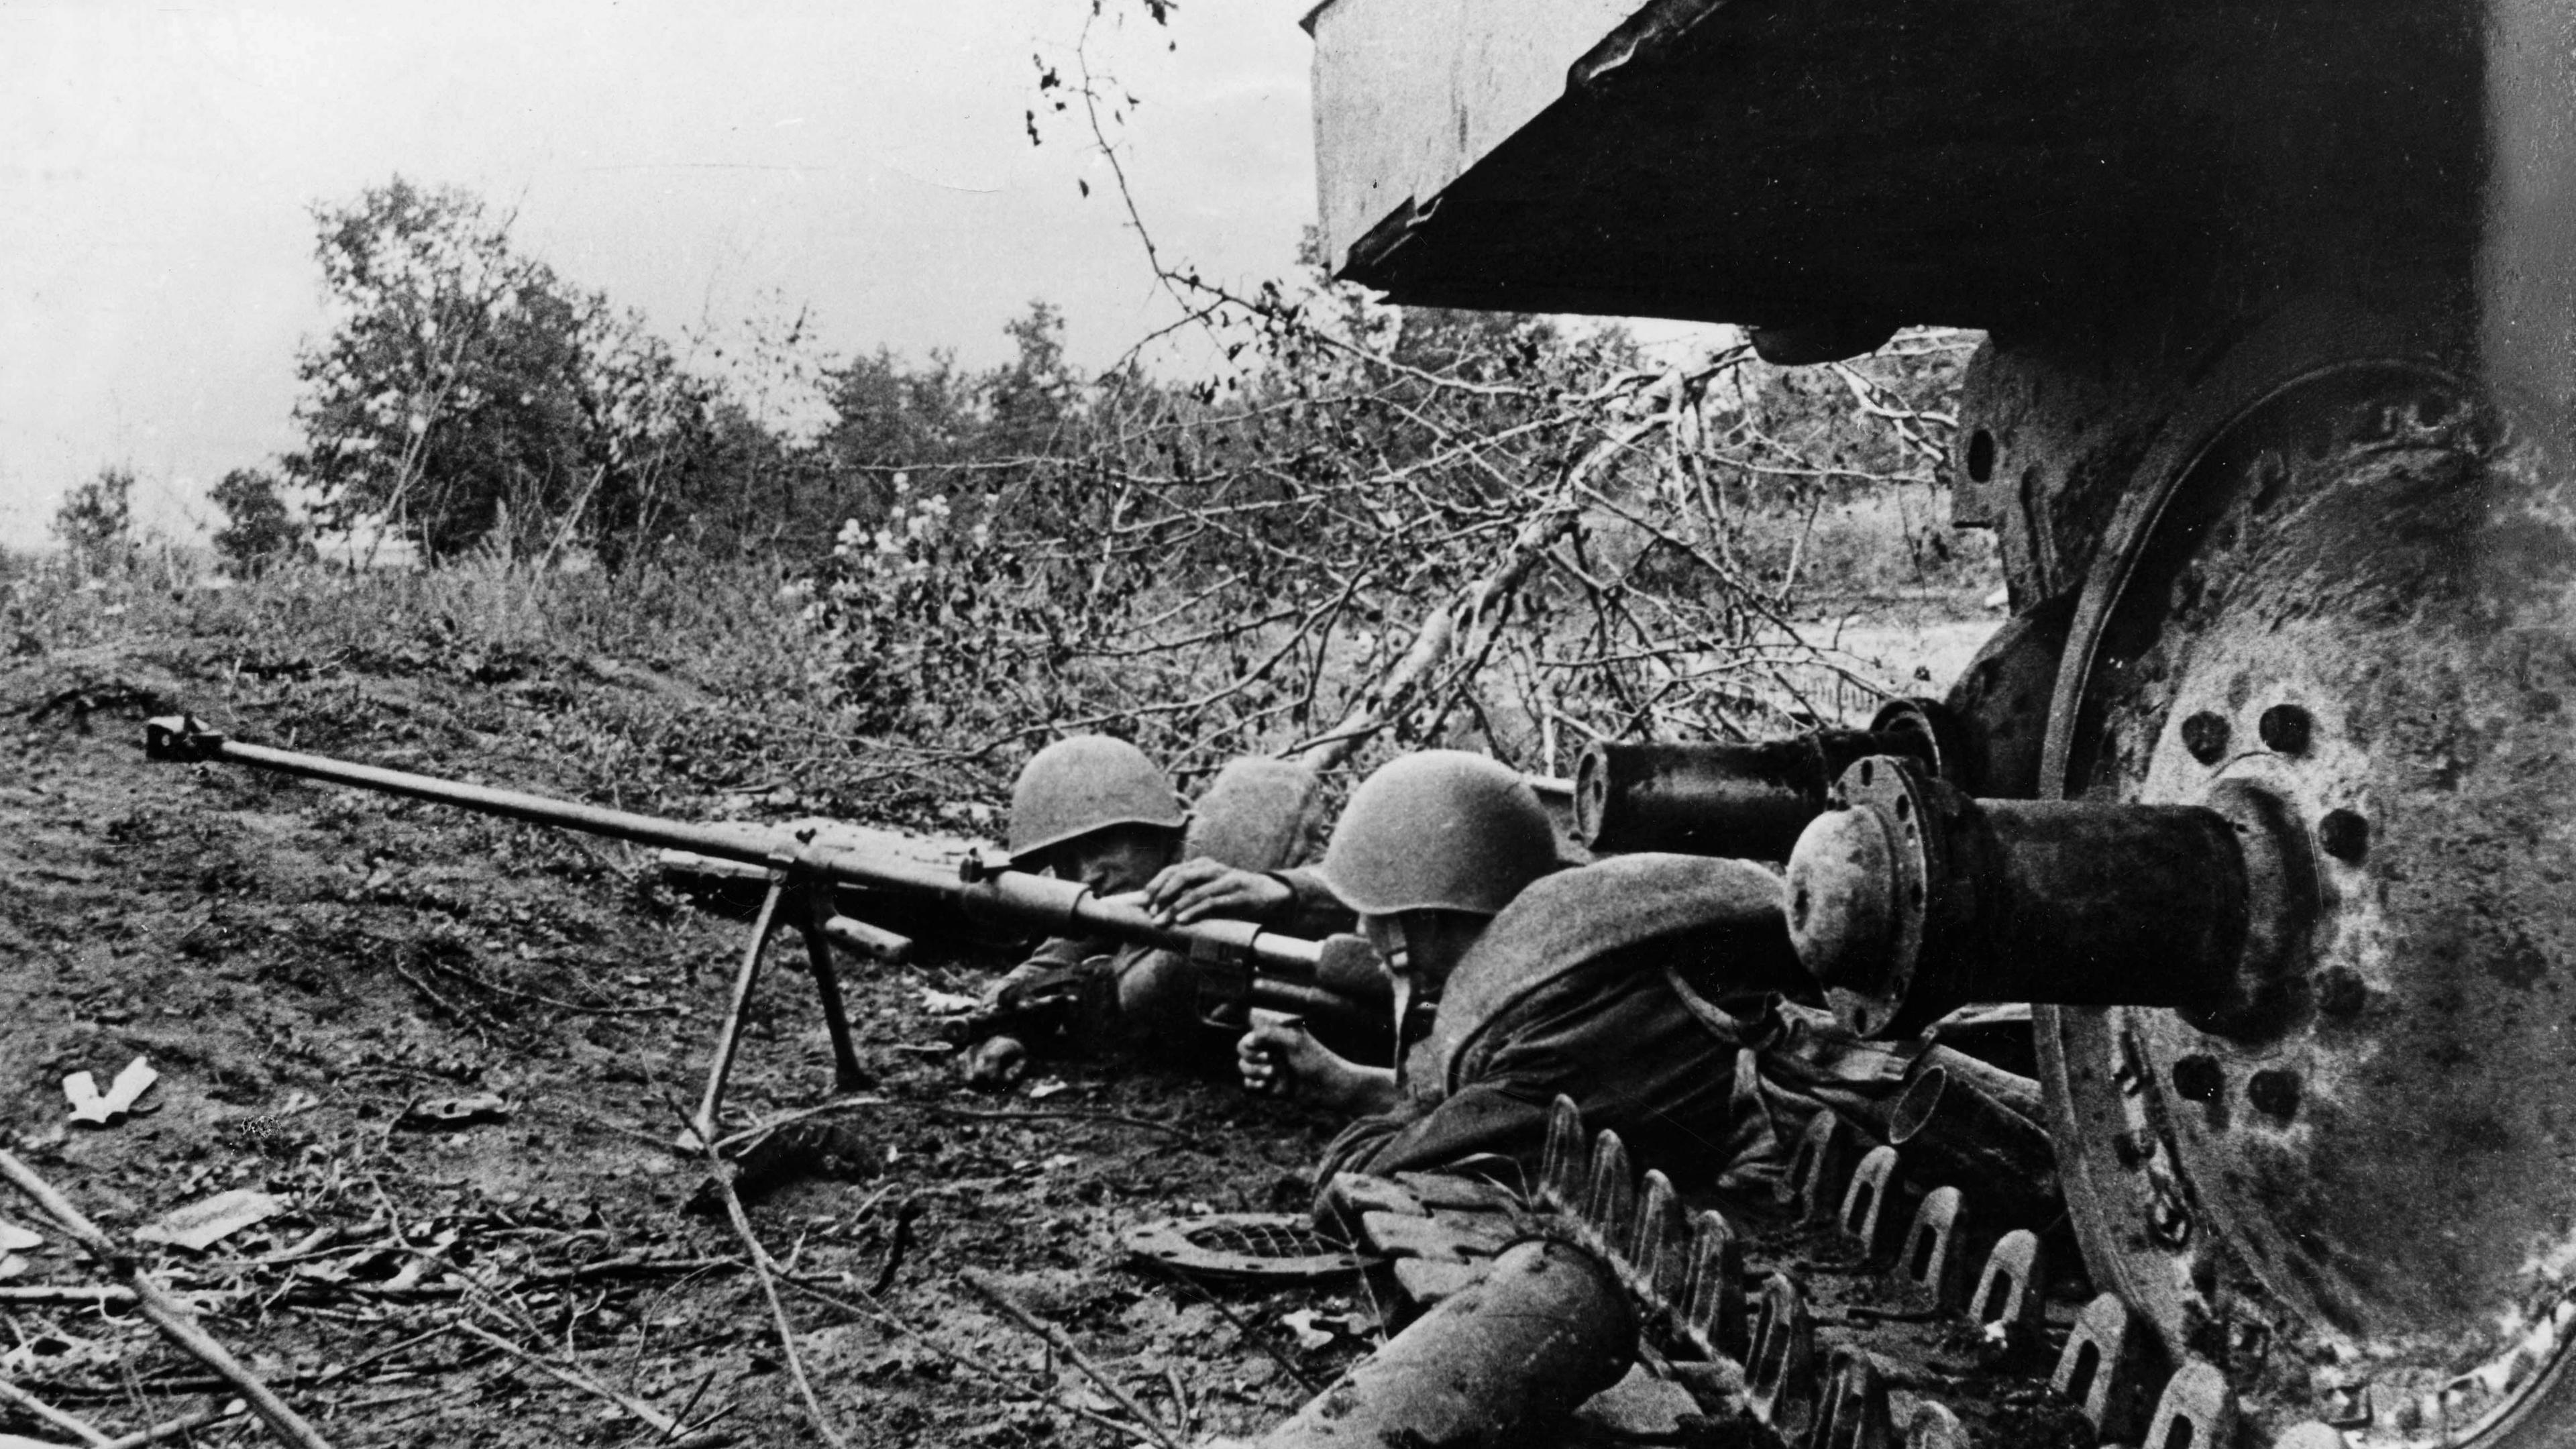 "Der Zweite Weltkrieg: Totaler Krieg": Schwarz-Weiß-Foto: Zwei Rotarmisten liegen neben einem Panzer in Stellung.